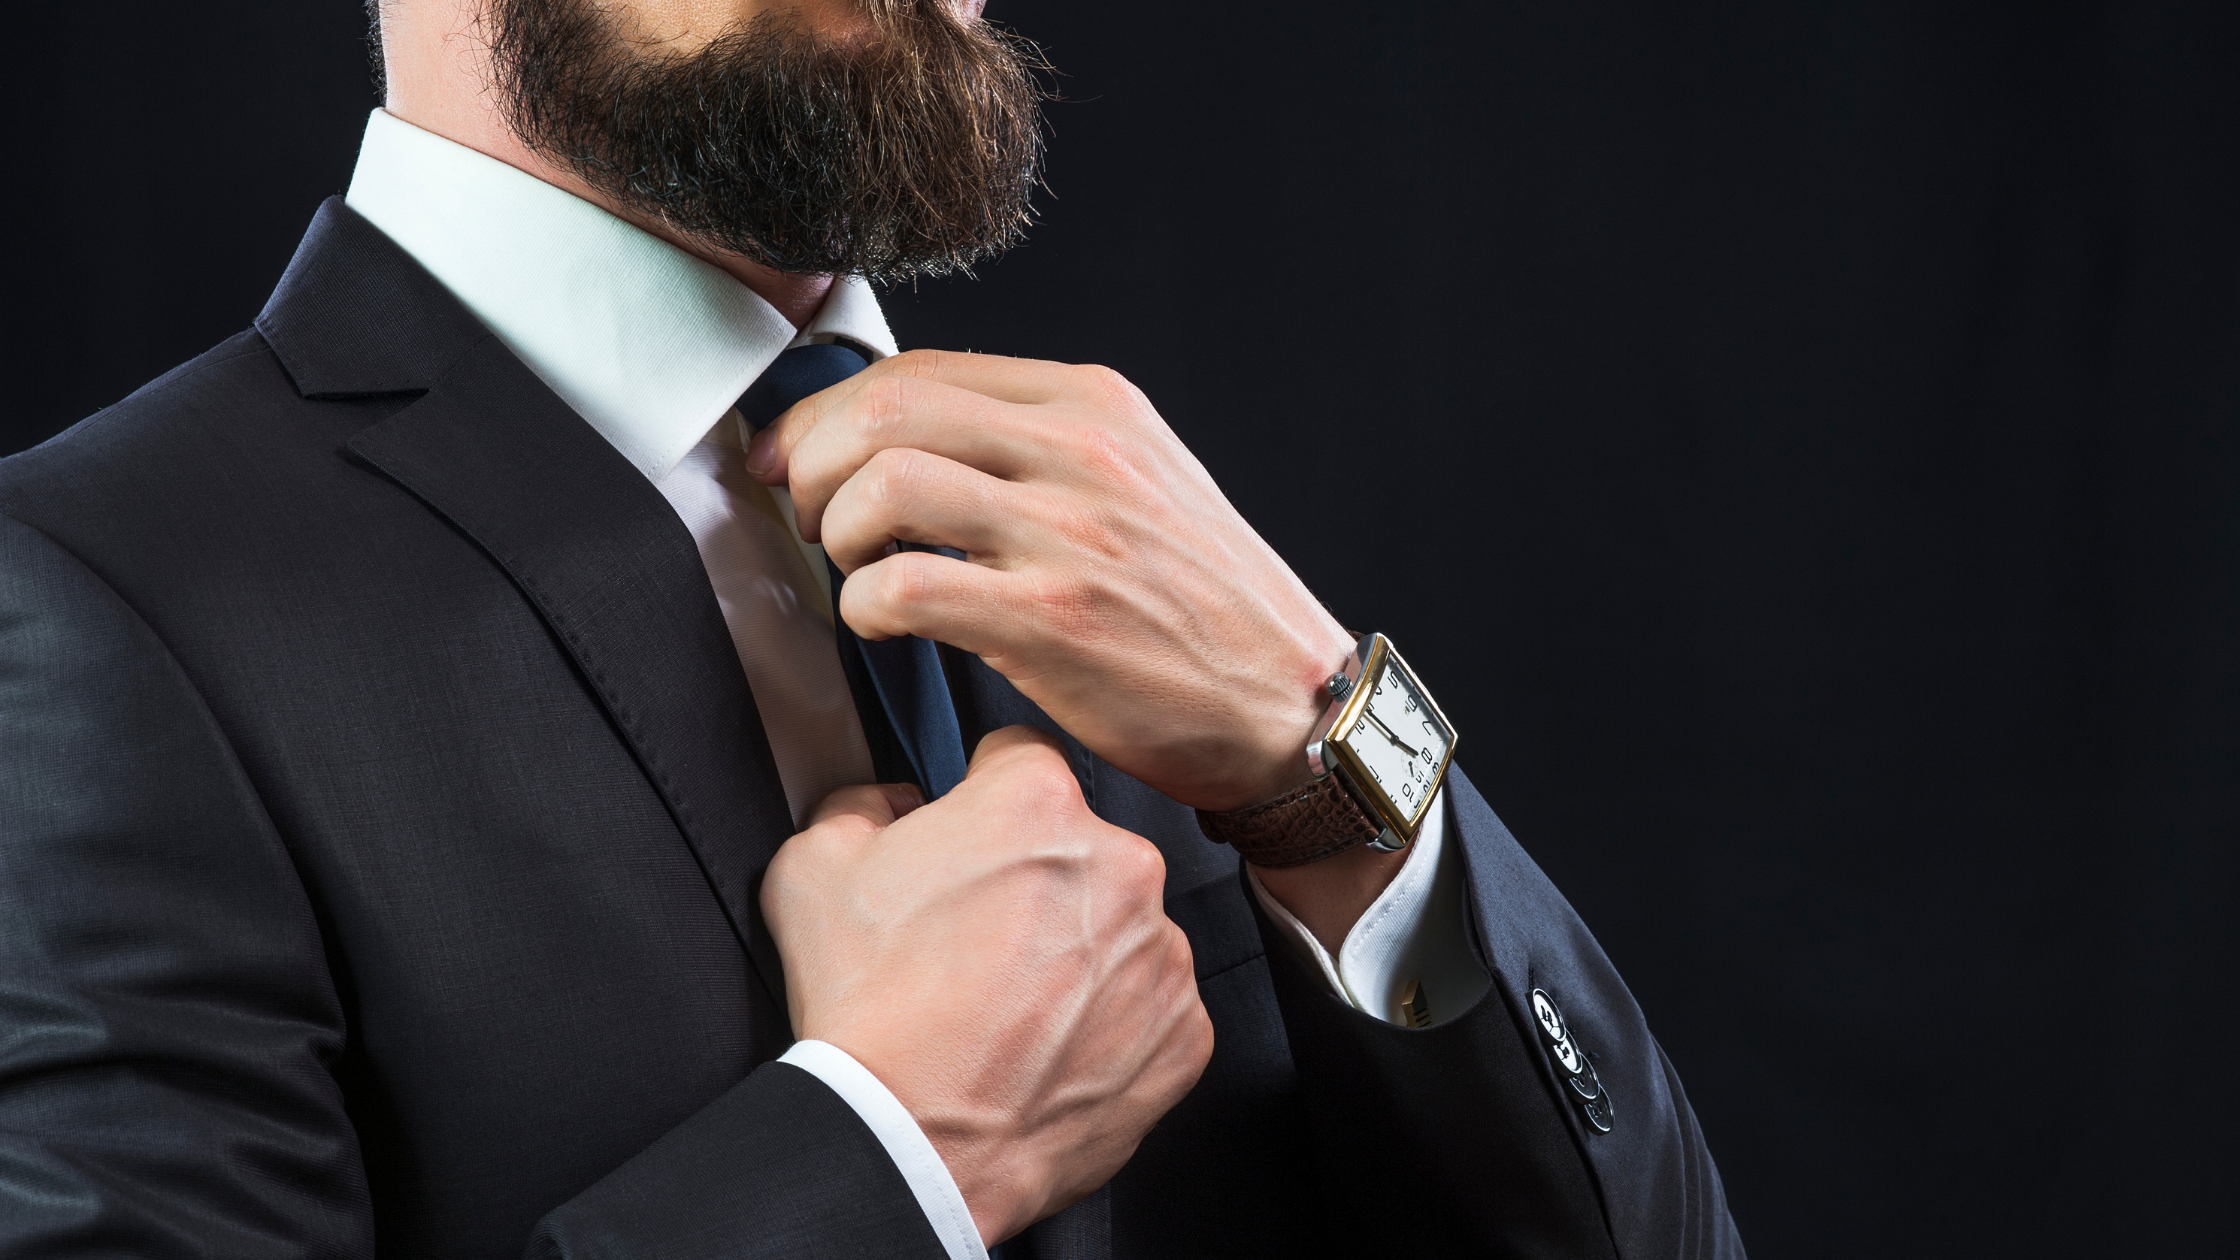 Cool or Cringe? 3 New Ways to Tie Your Necktie